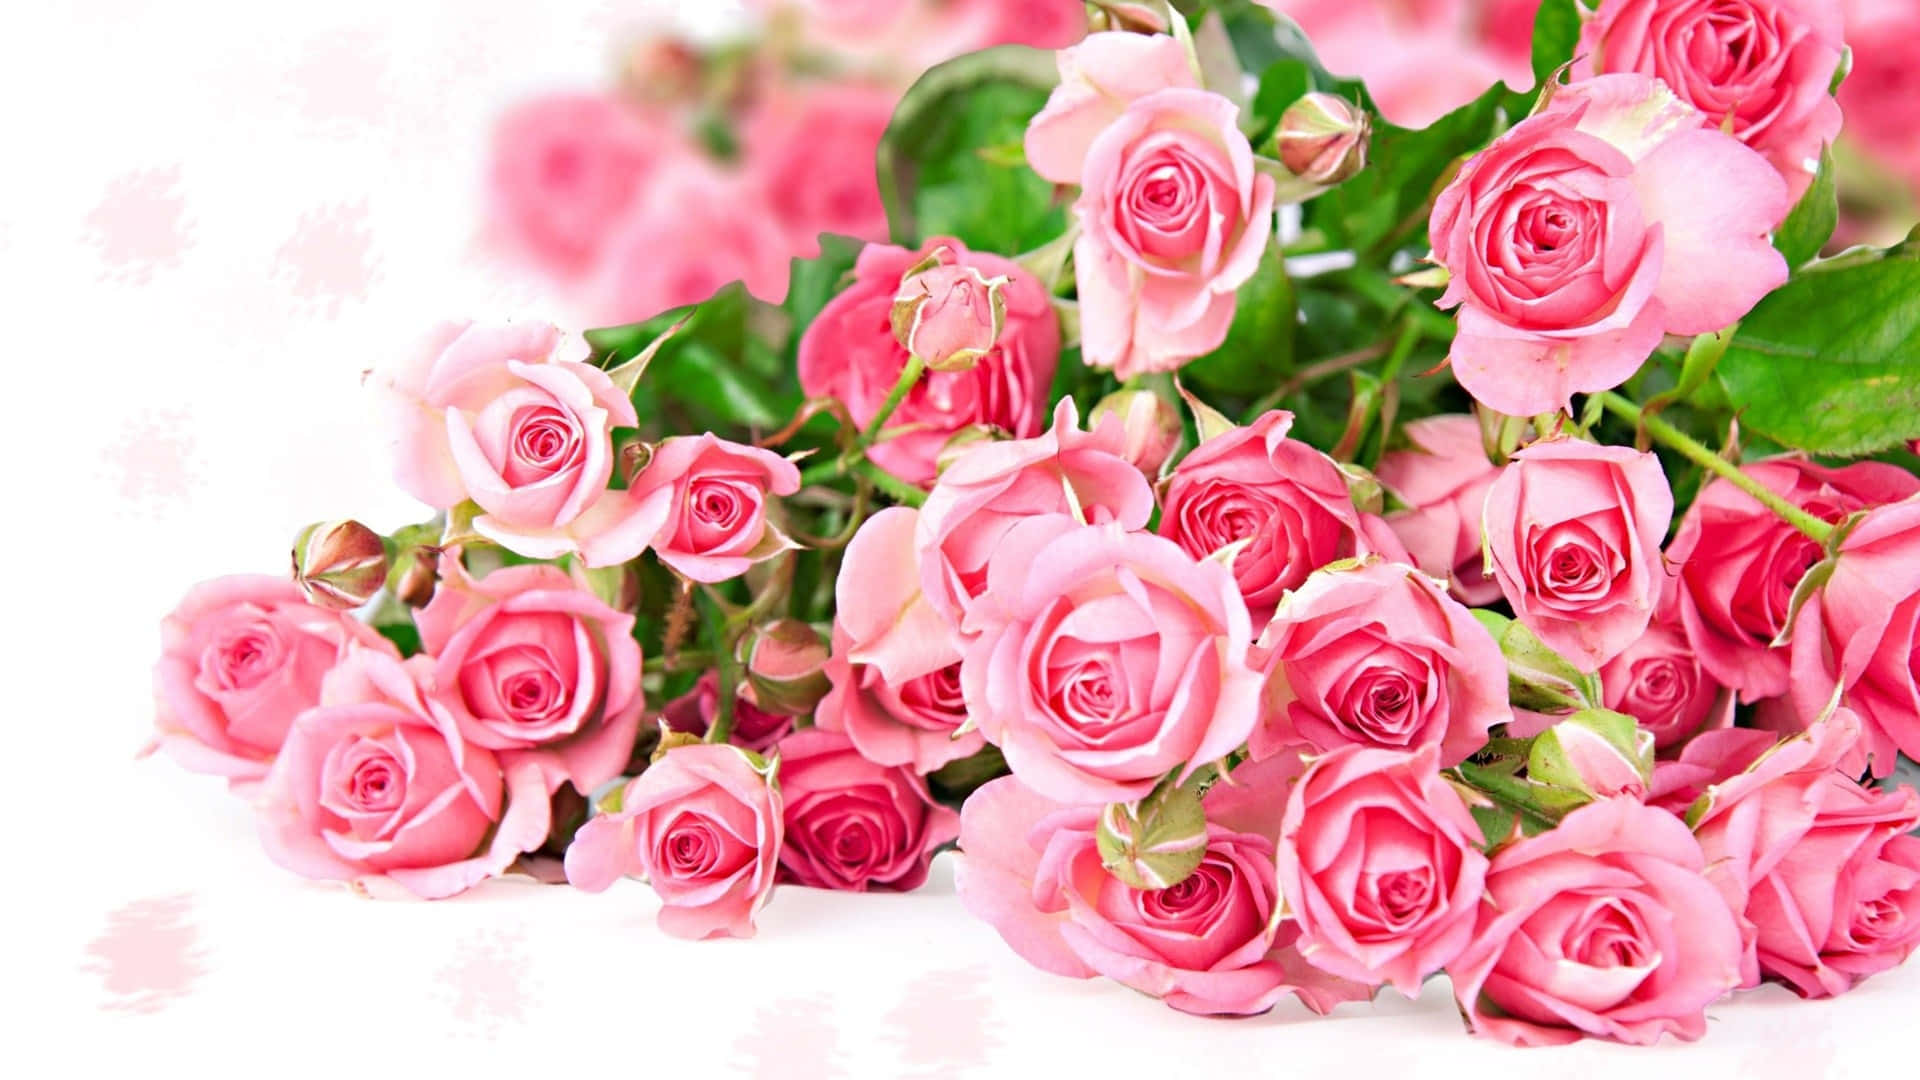 Rose Bouquet Desktop Pictures